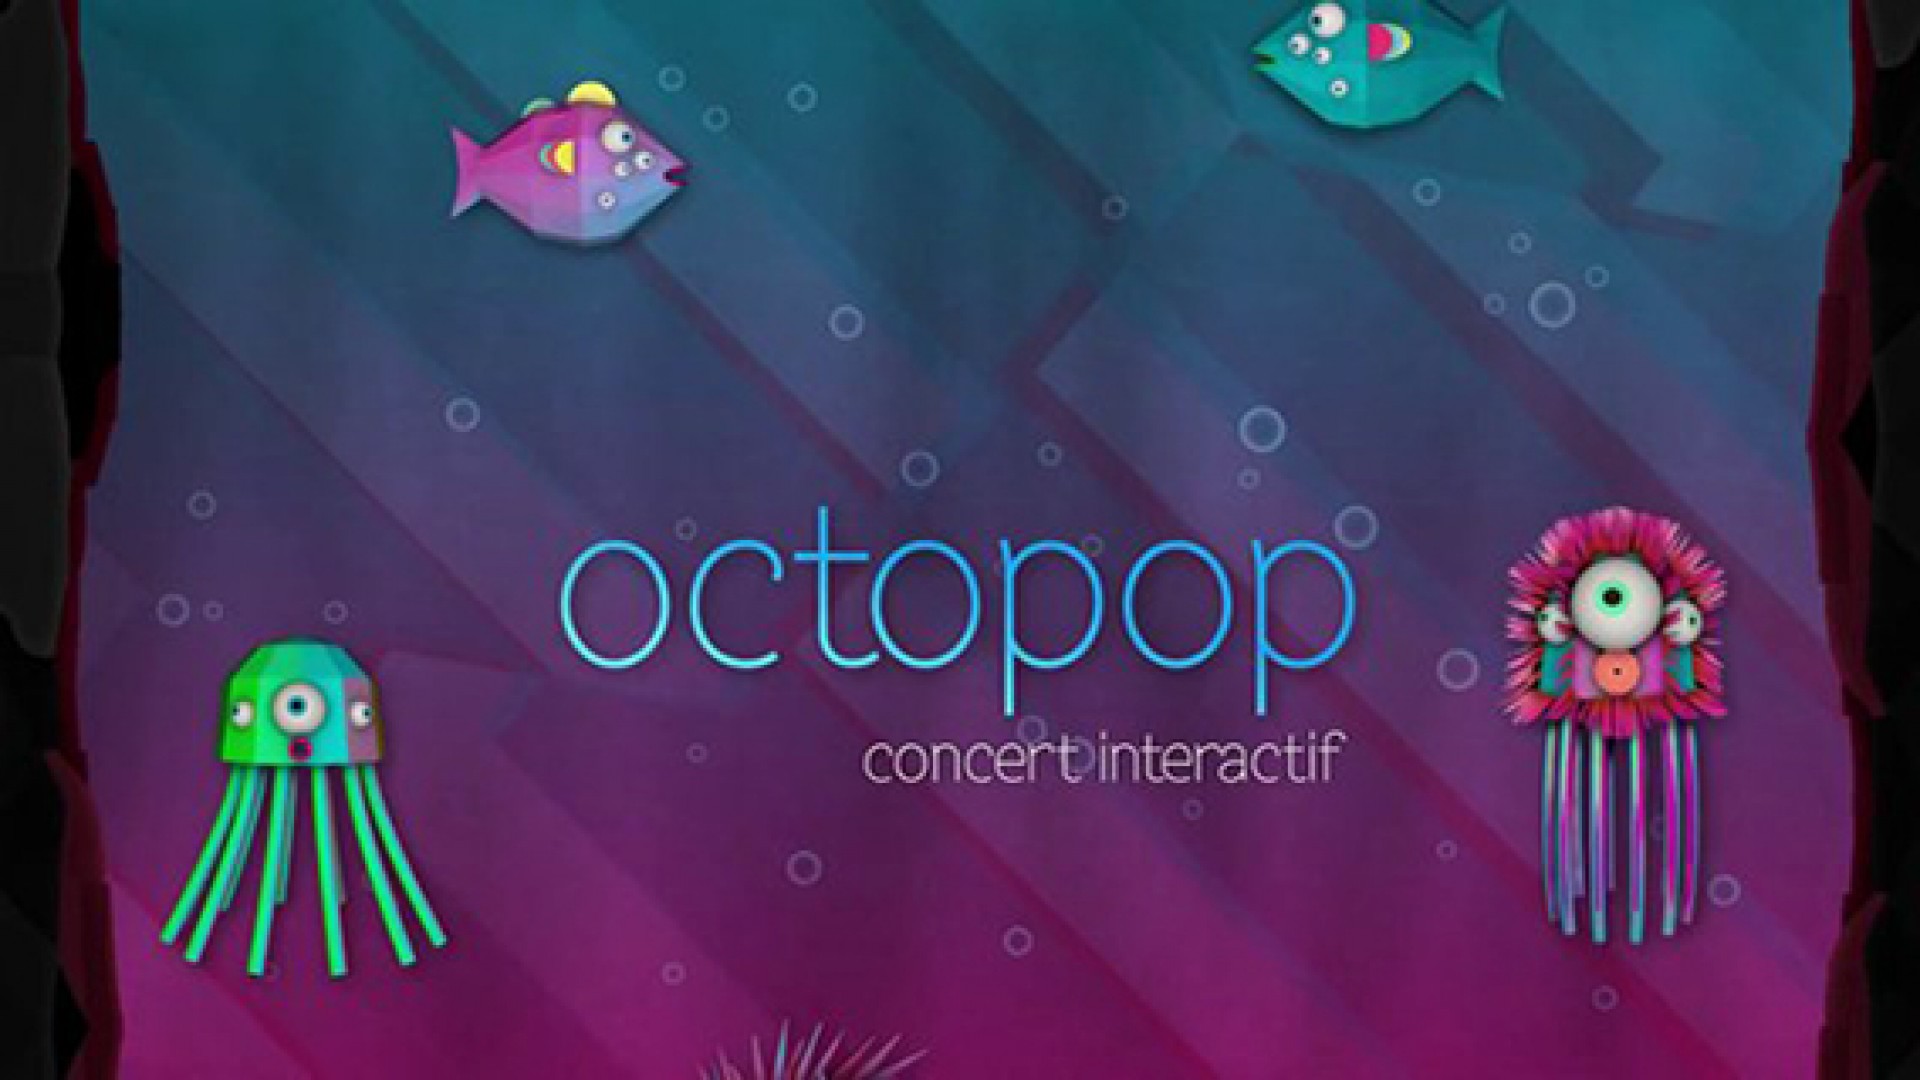 Octopop